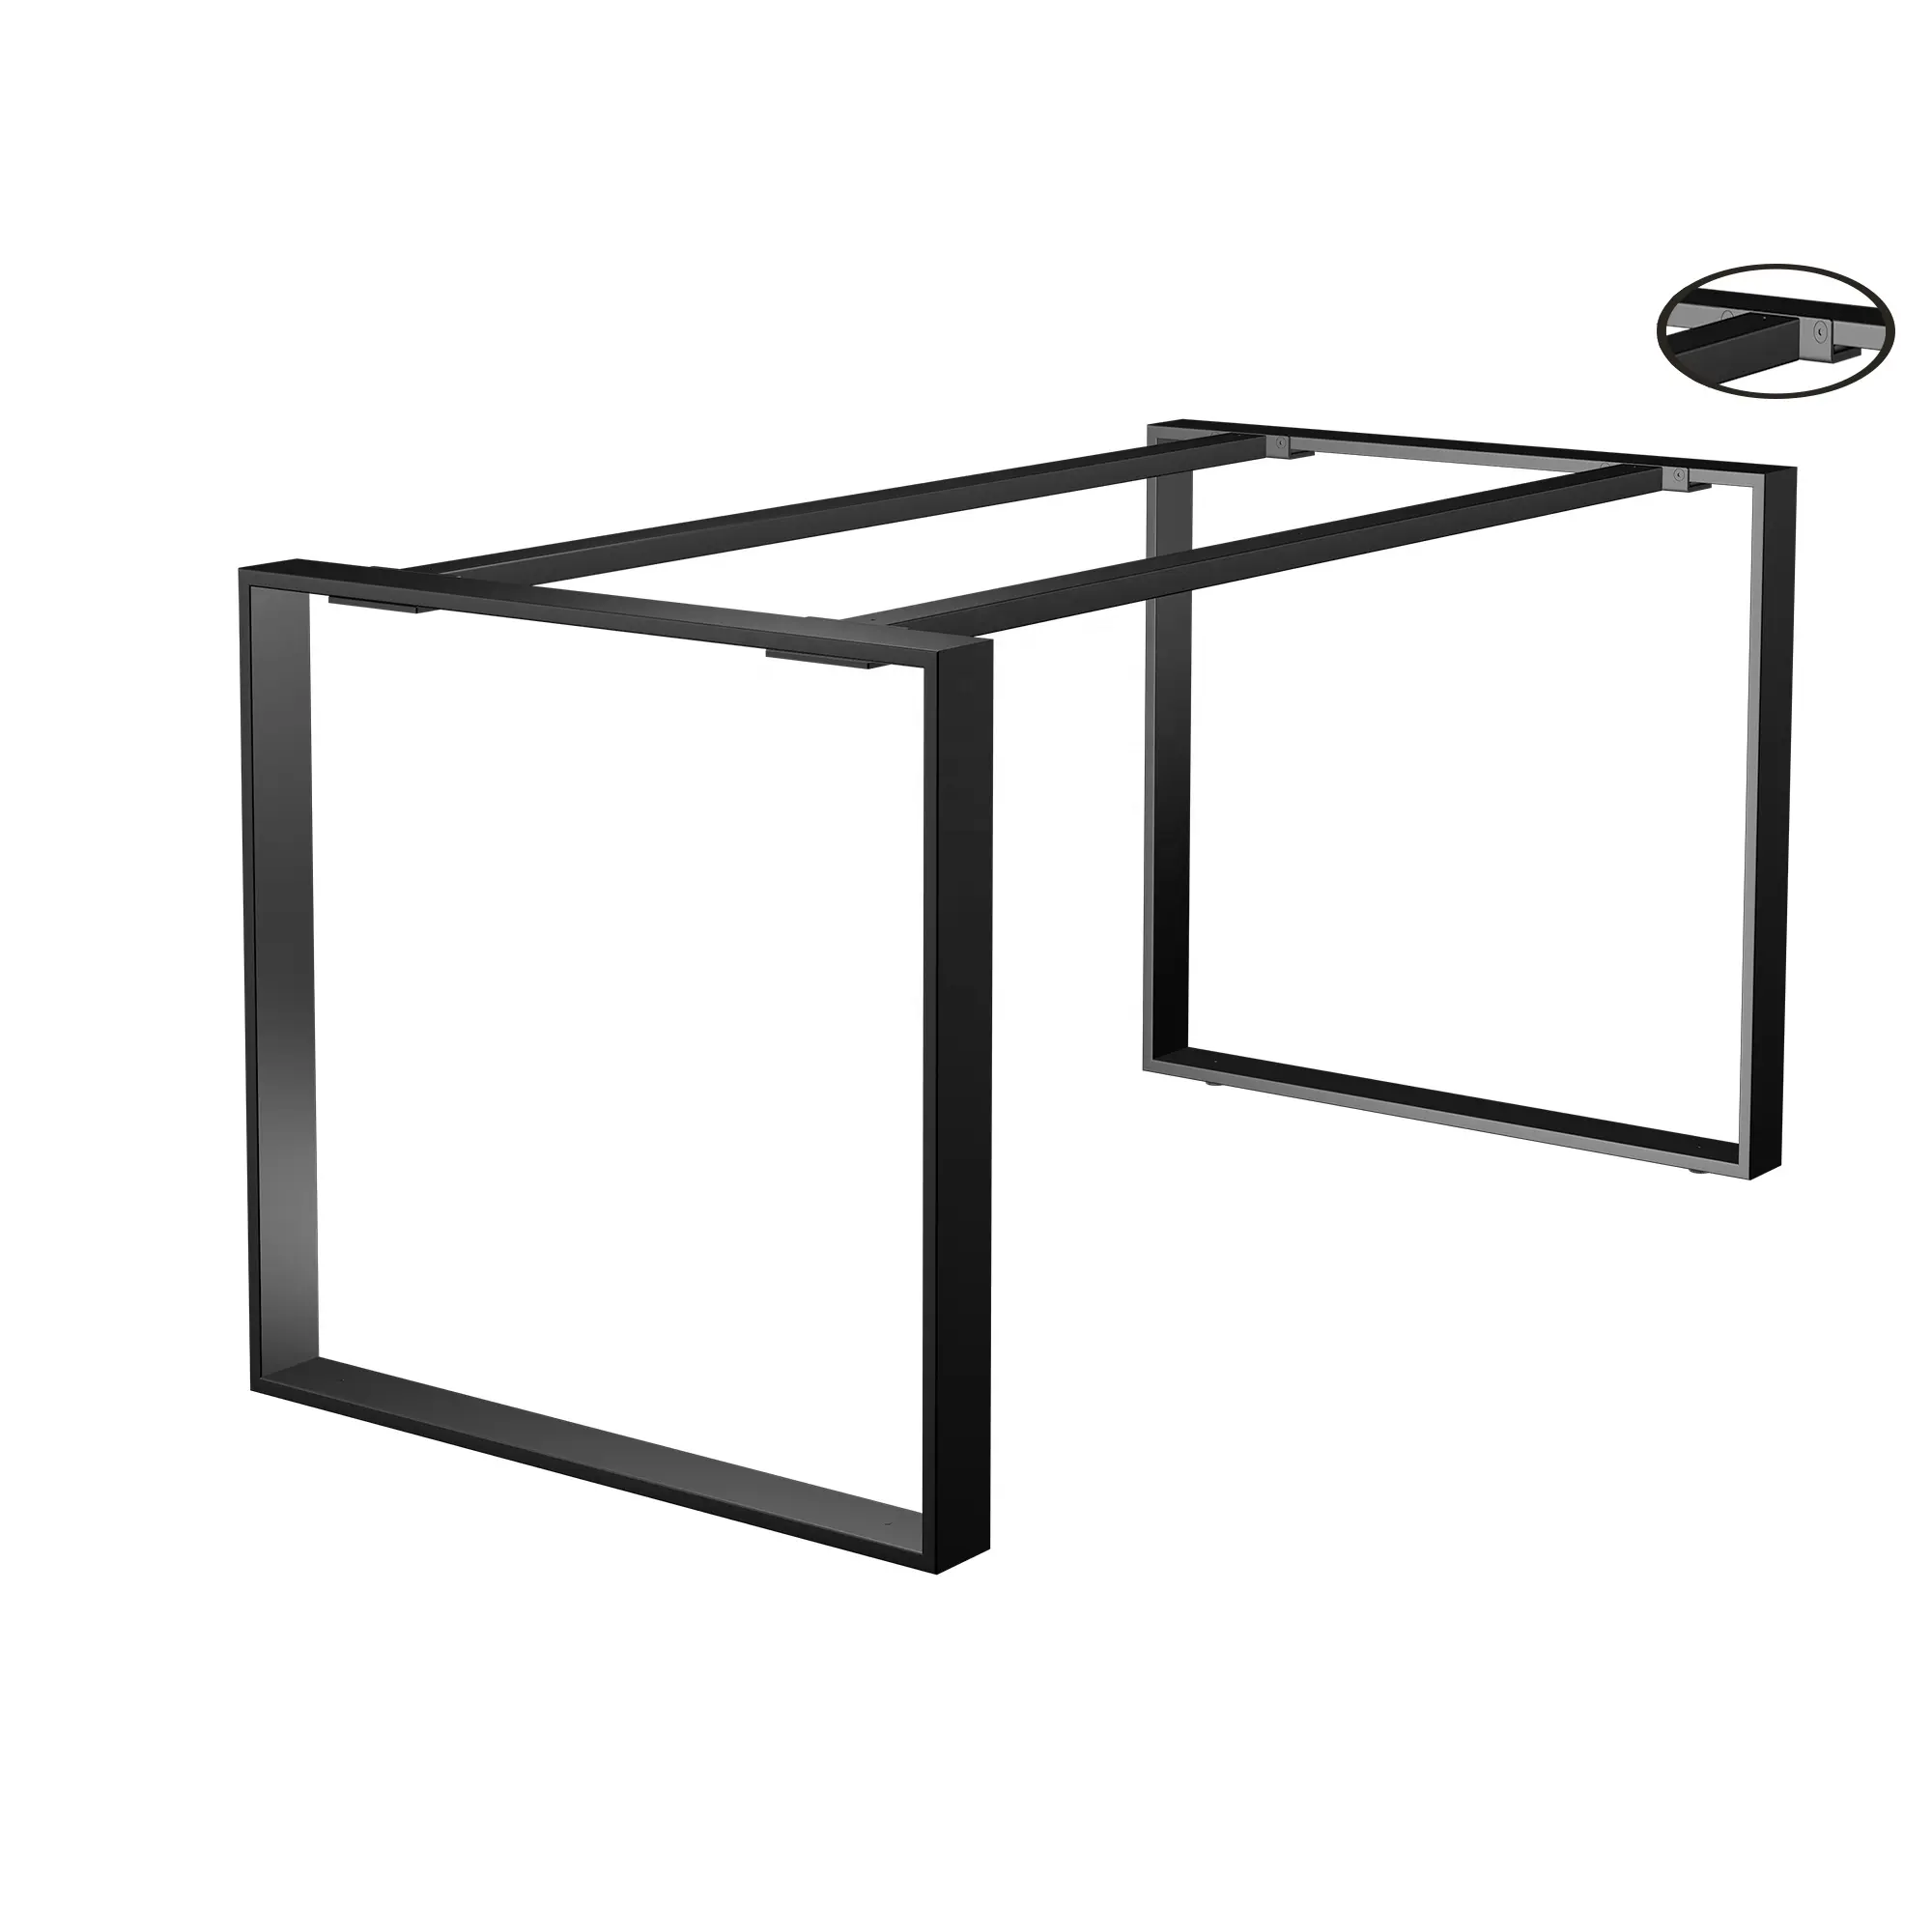 Pata de mesa de hierro fundido moderna personalizada Industrial de Metal cuadrado de alta calidad para mesa de oficina